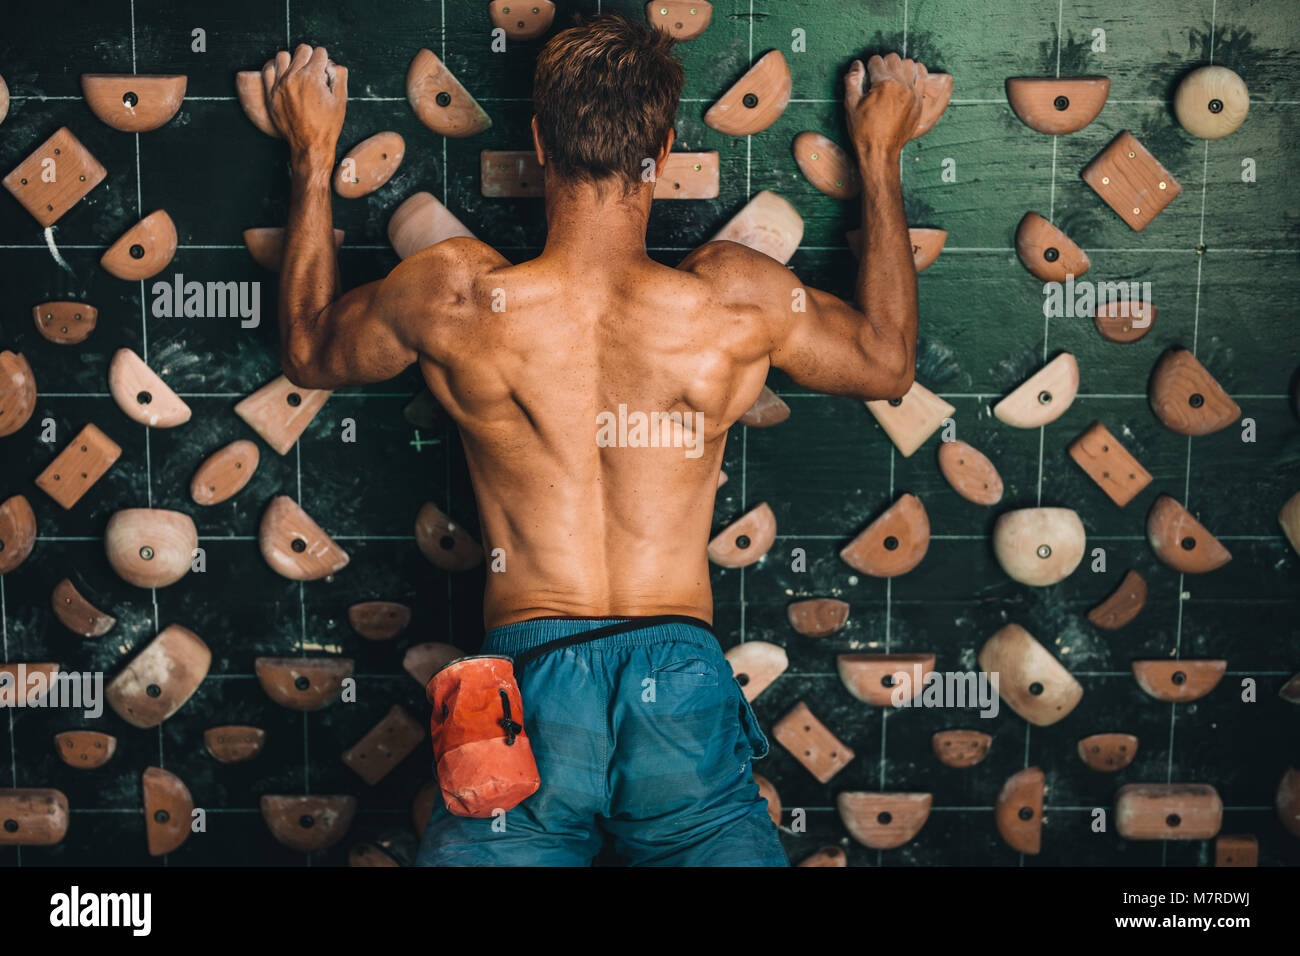 Muscular man climbing wall at an indoor wall climbing centre. Rock climber practicing climbing at an indoor climbing gym. Stock Photo